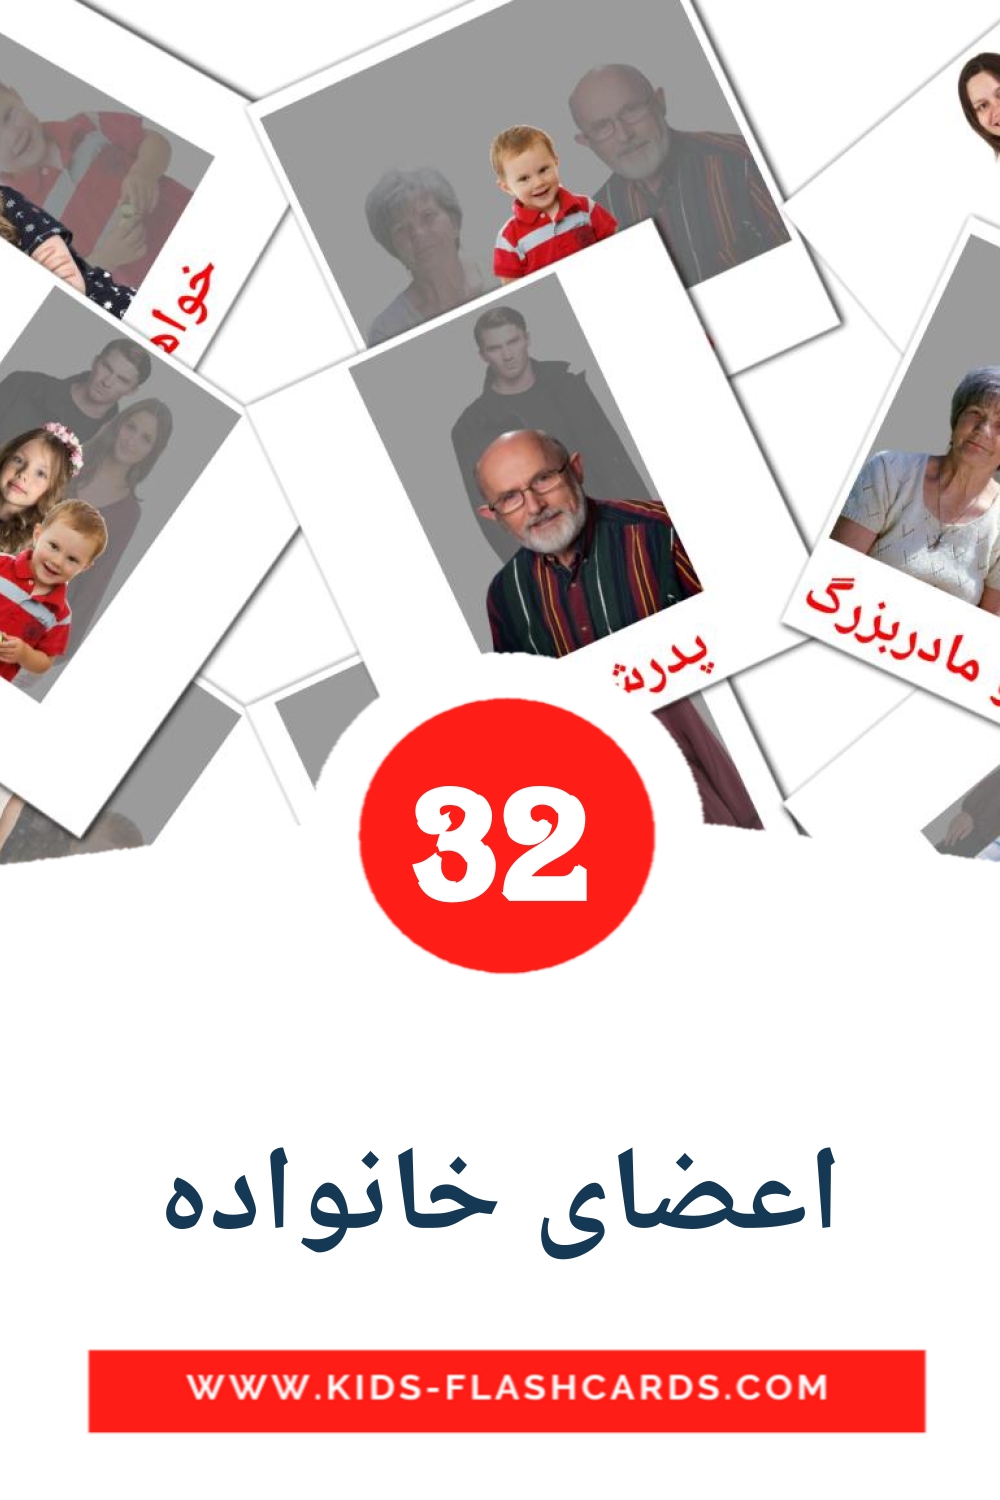 32 اعضای خانواده Picture Cards for Kindergarden in persian